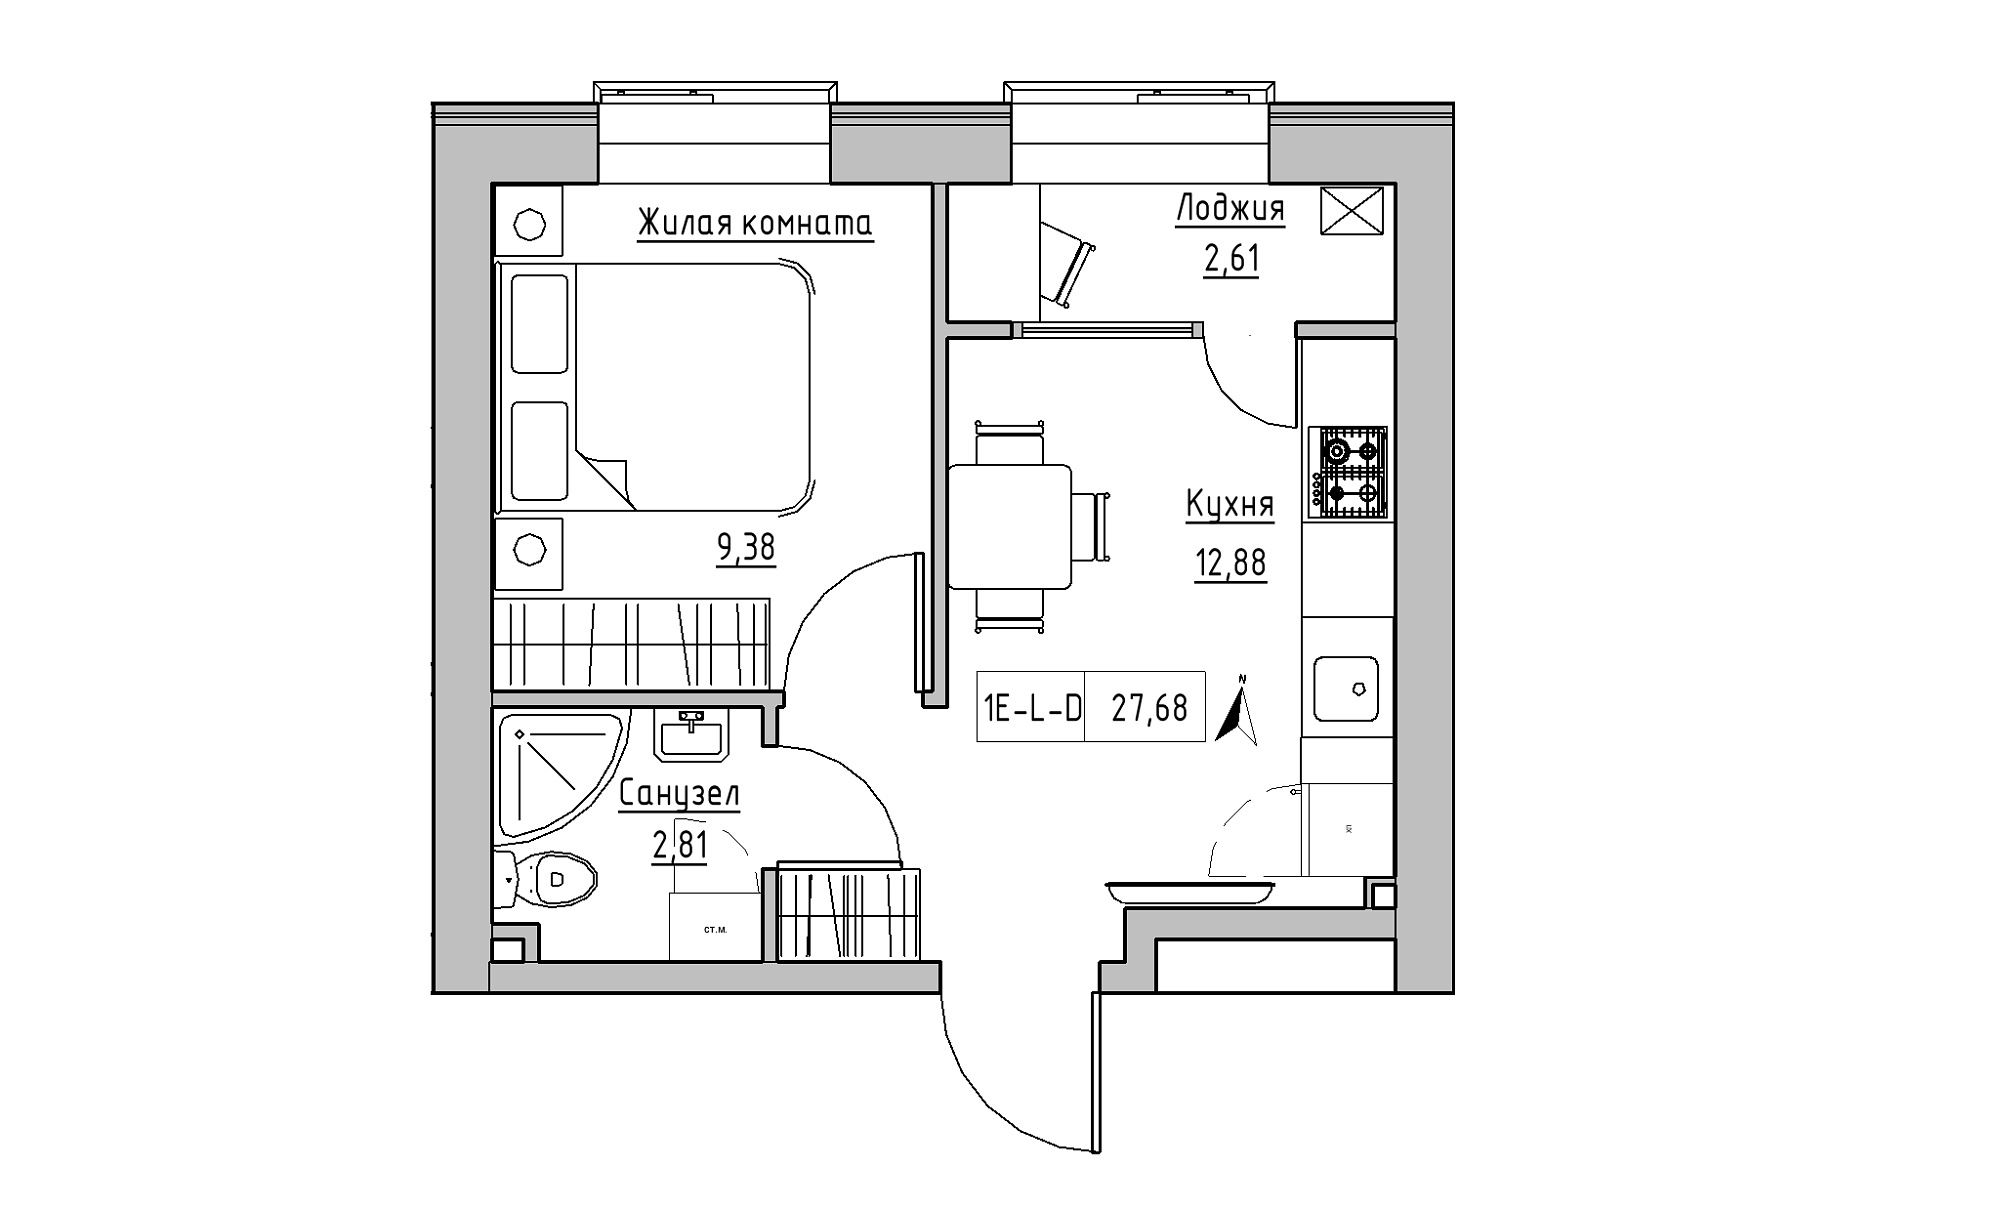 Планировка 1-к квартира площей 27.68м2, KS-016-05/0001.